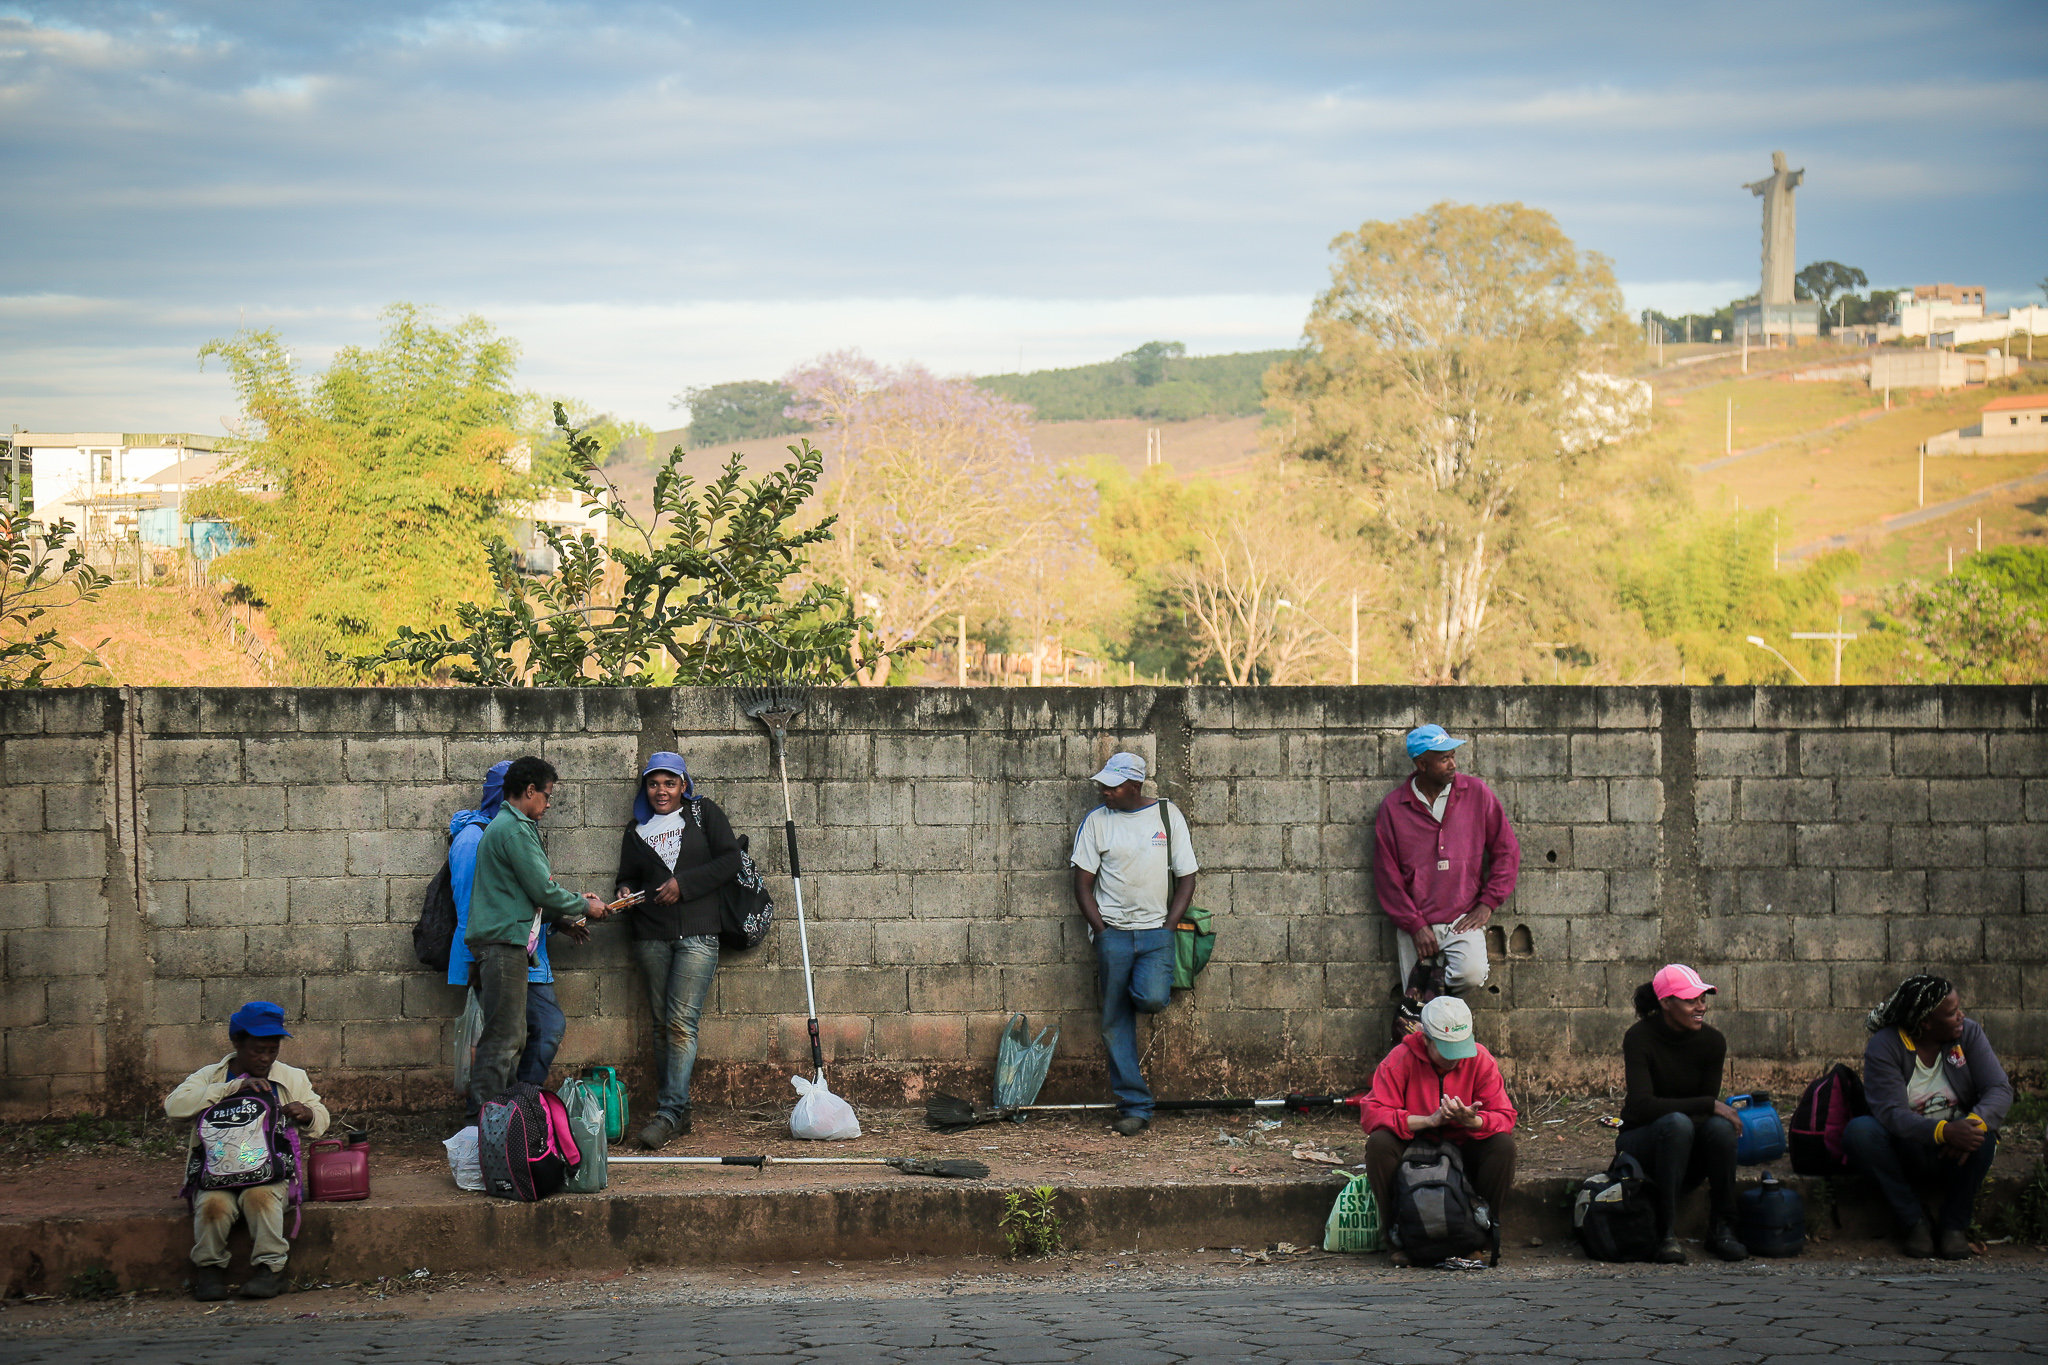 Trabalhadores rurais aguardam a chegada de transporte (ônibus ou van) para serem levados às fazendas de café nas quais trabalham sob condições degradantes e análogas à escravidão.  Foto João Paulo Brito/Conectas